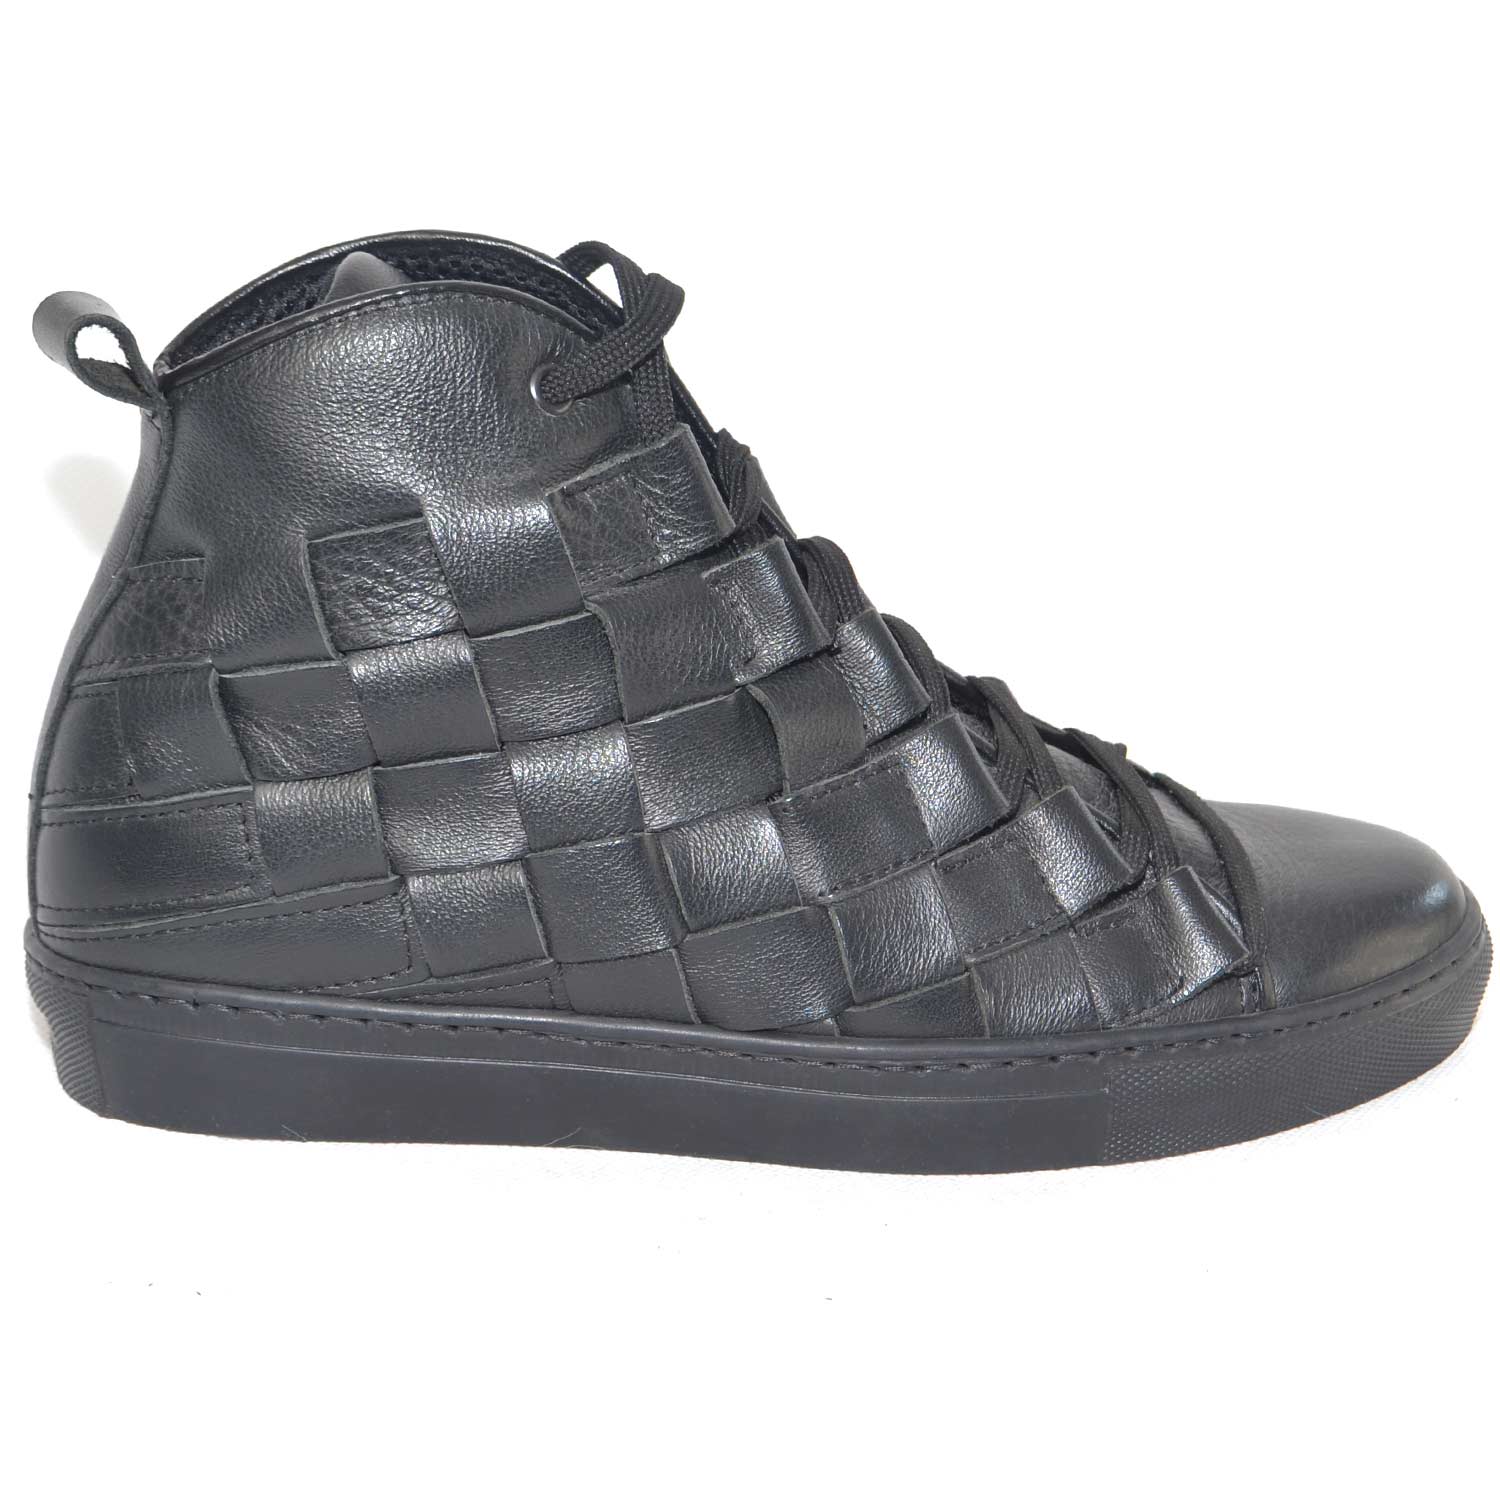 Sneakers alta uomo pelle nero moda glamour intreccio a mano fondo antiscivolo tono su tono made in italy.